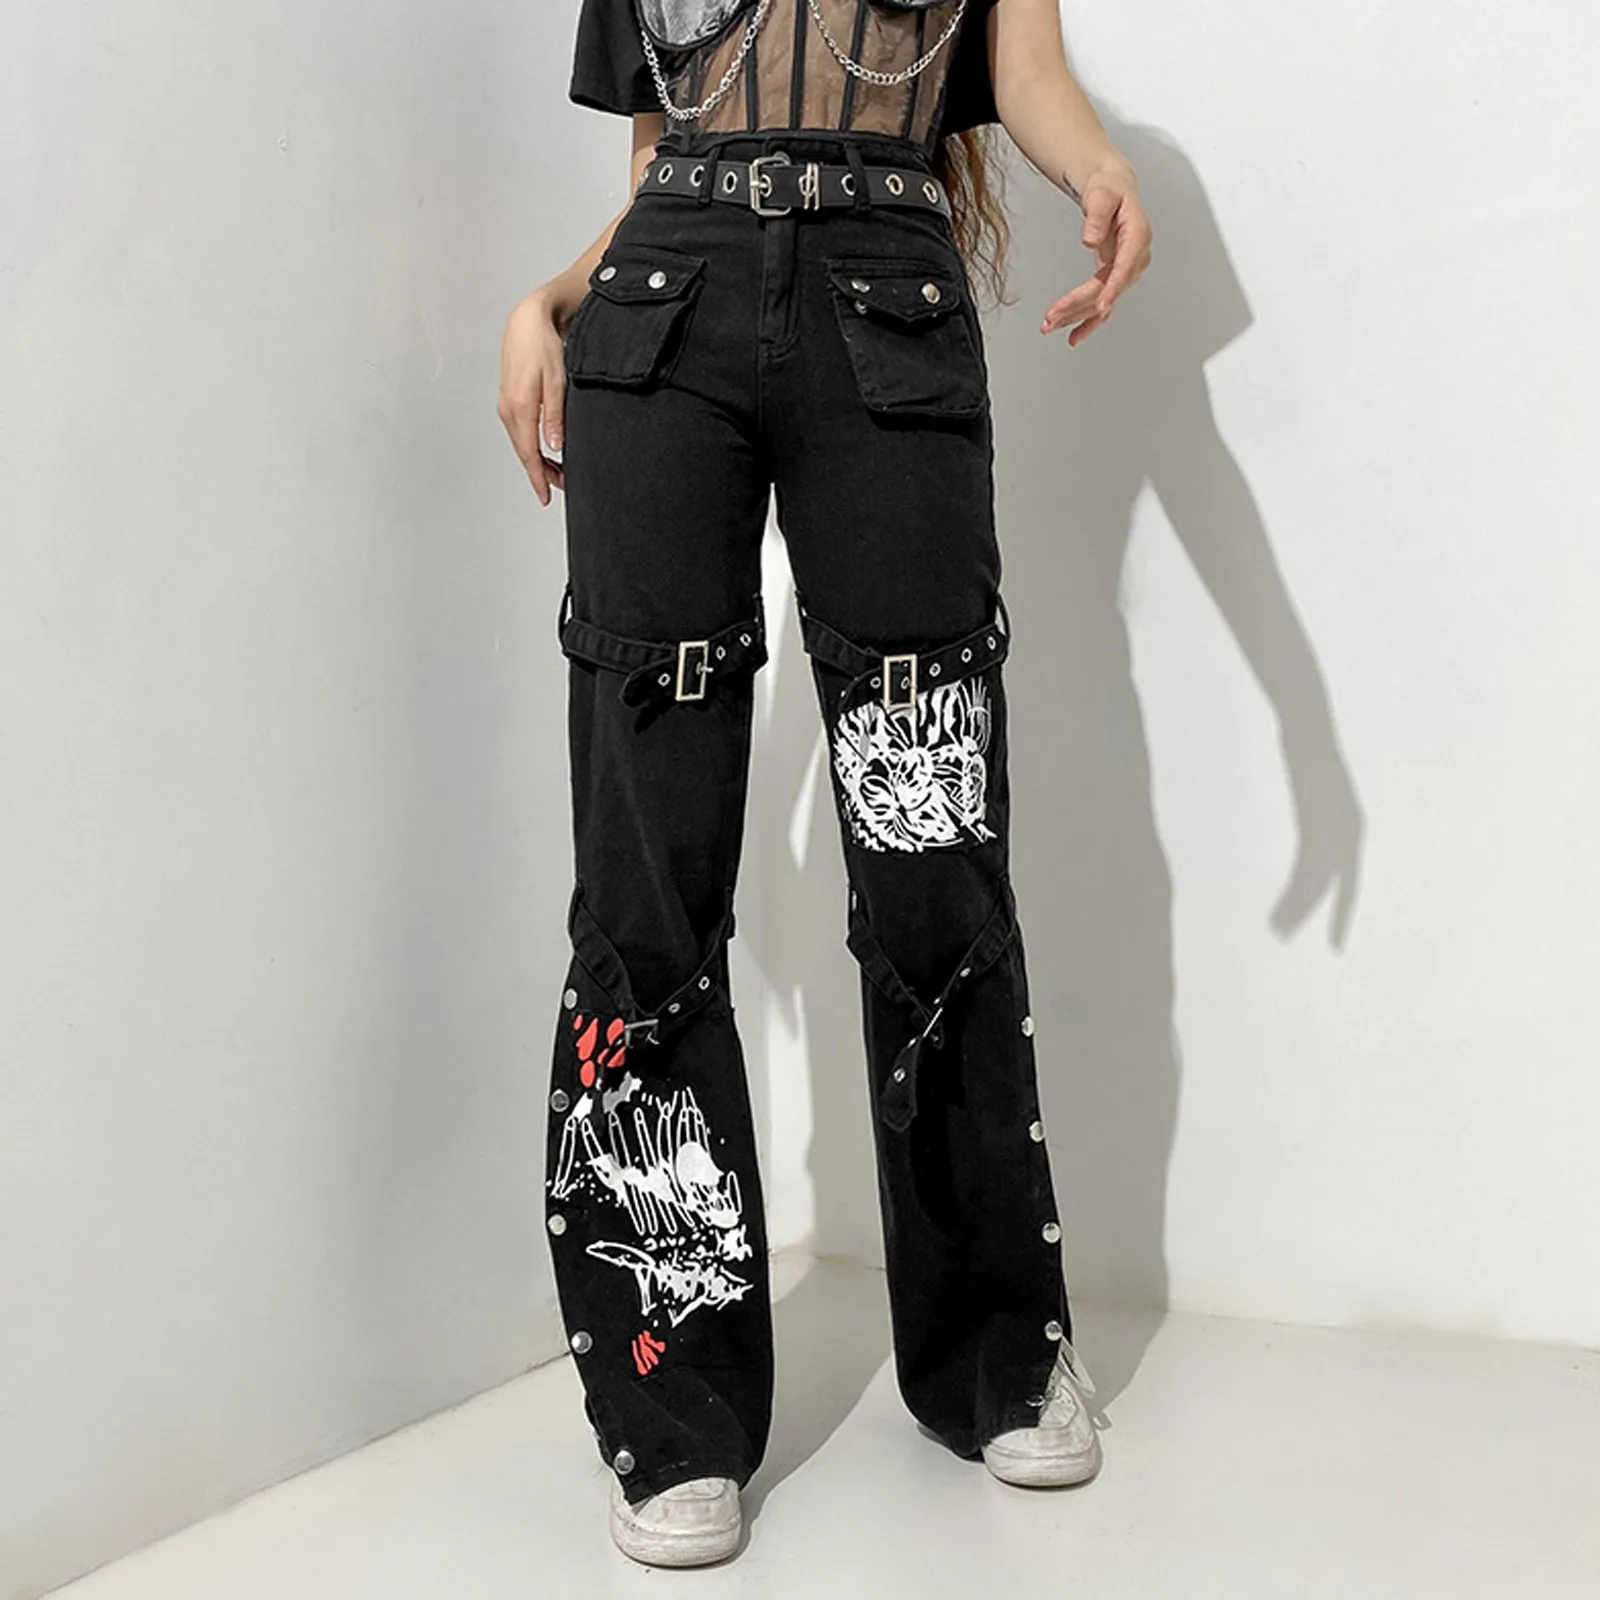 

Брюки-карго Женские Мешковатые, уличная одежда в стиле хип-хоп, корейские джоггеры, спортивные штаны в стиле Харадзюку, повседневные свободные брюки с широкими штанинами